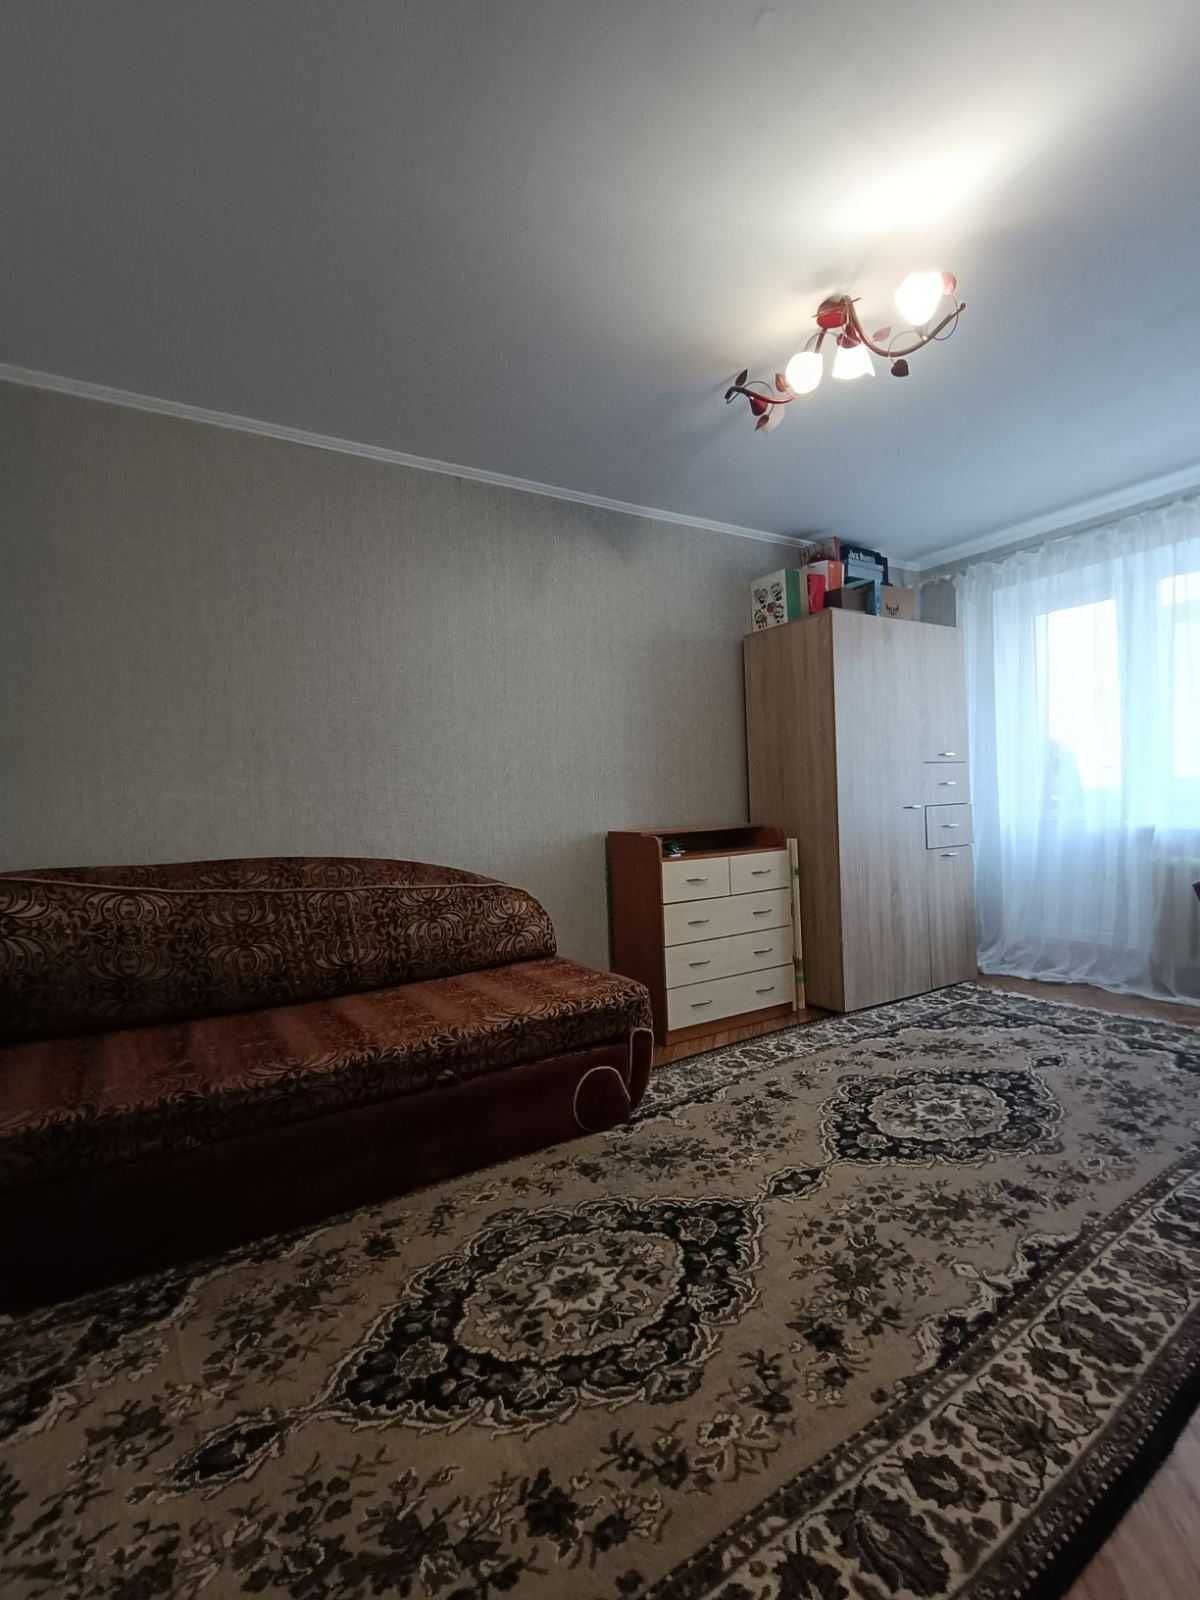 Продам 1 - кімнатну  квартиру  35 м2  за 29800 у.о